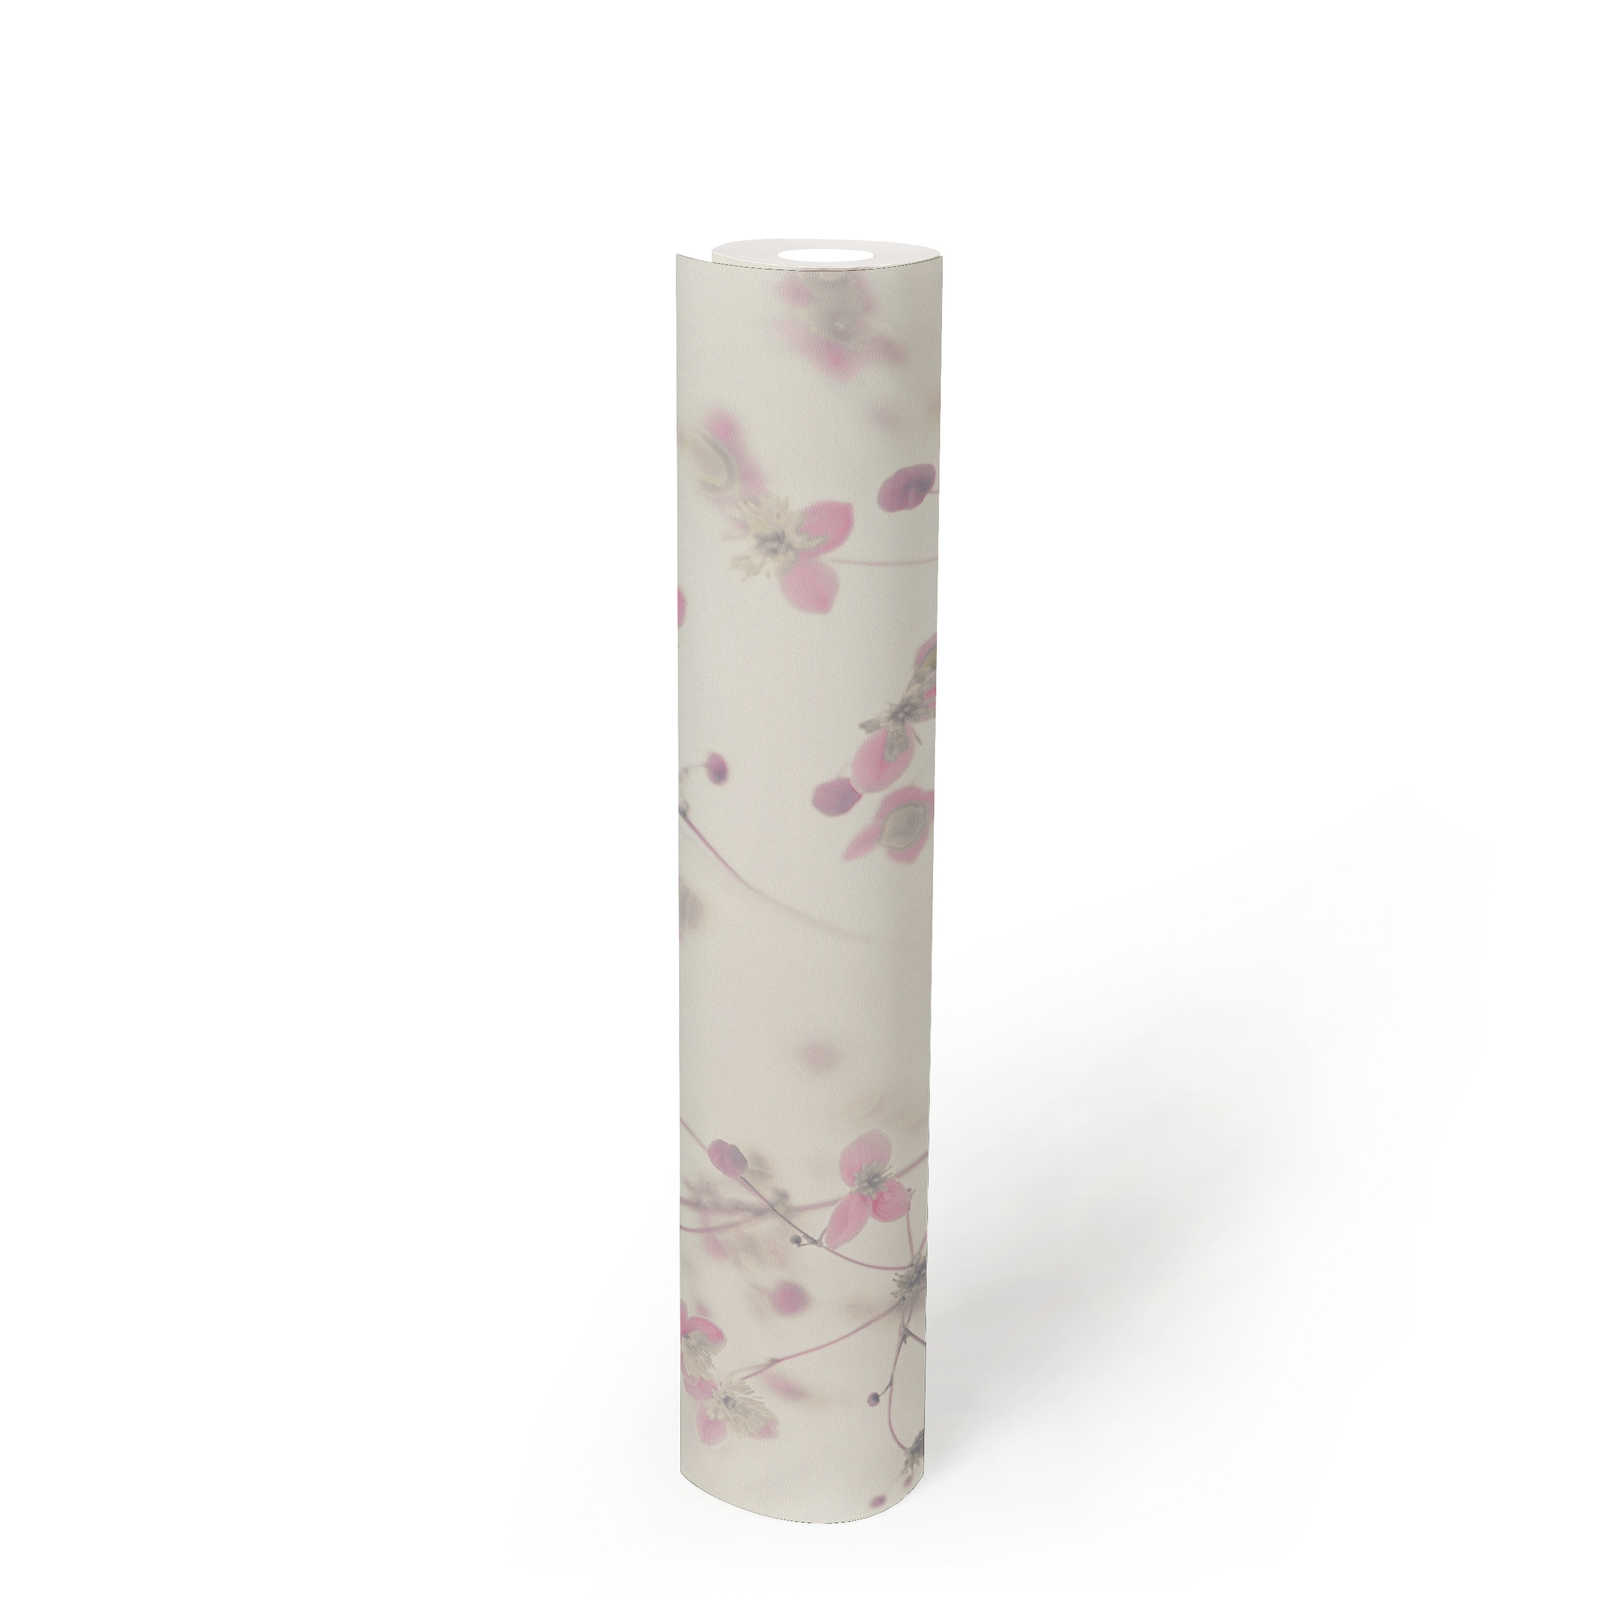             Papier peint rustique moderne motif fleurs - gris, rose
        